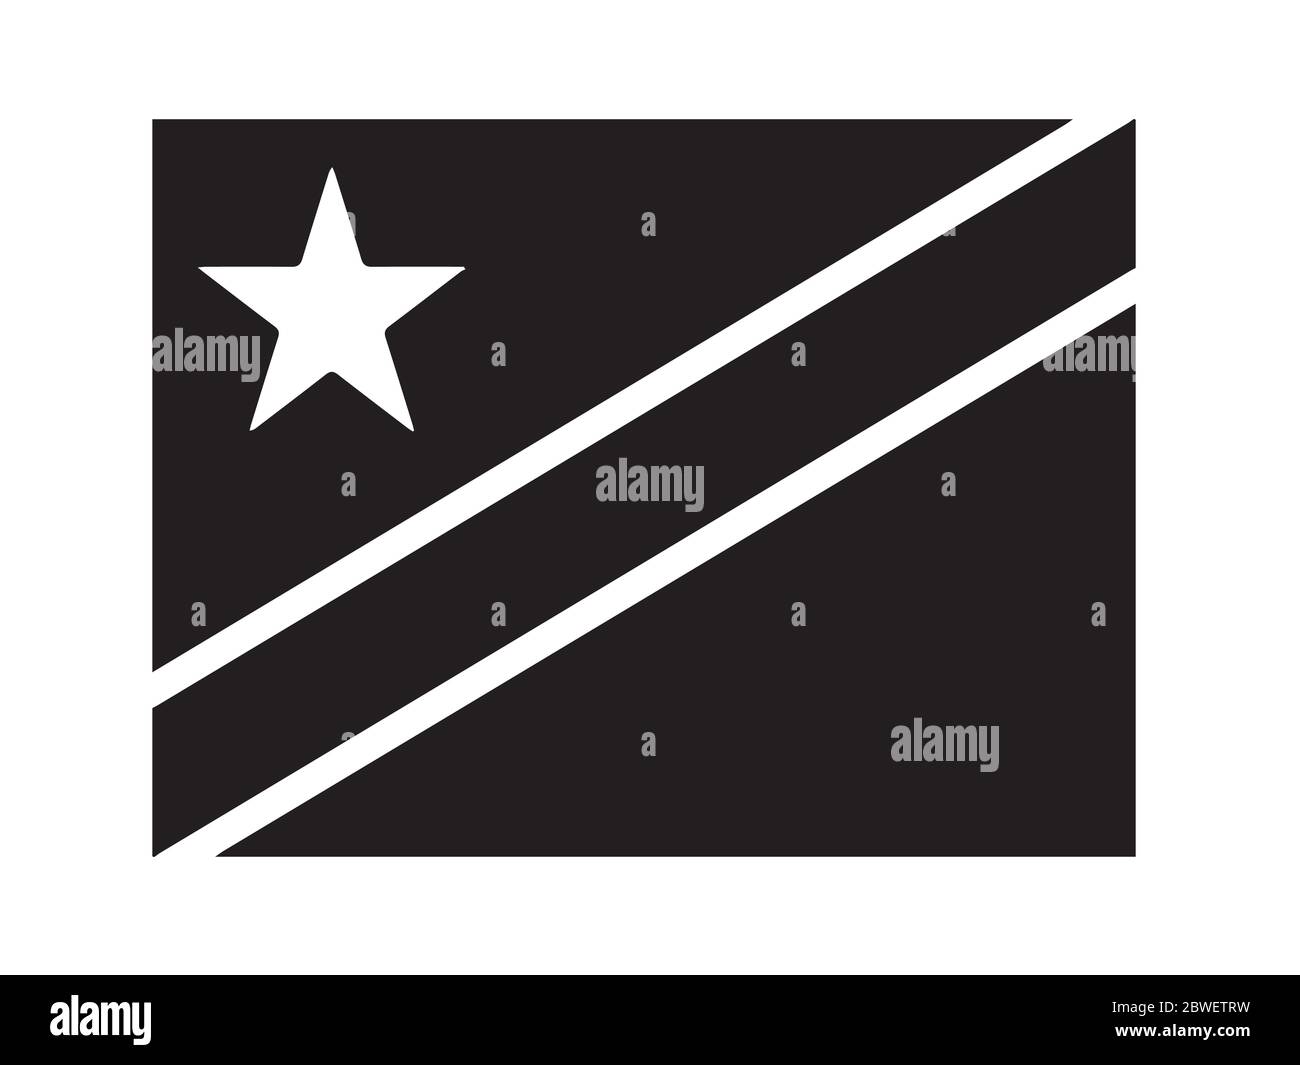 Demokratische Republik Kongo Flagge Schwarz und Weiß. Banner Mit Landeszeichen. EPS-Vektordatei für Schwarzweiß-Graustufen. Stock Vektor